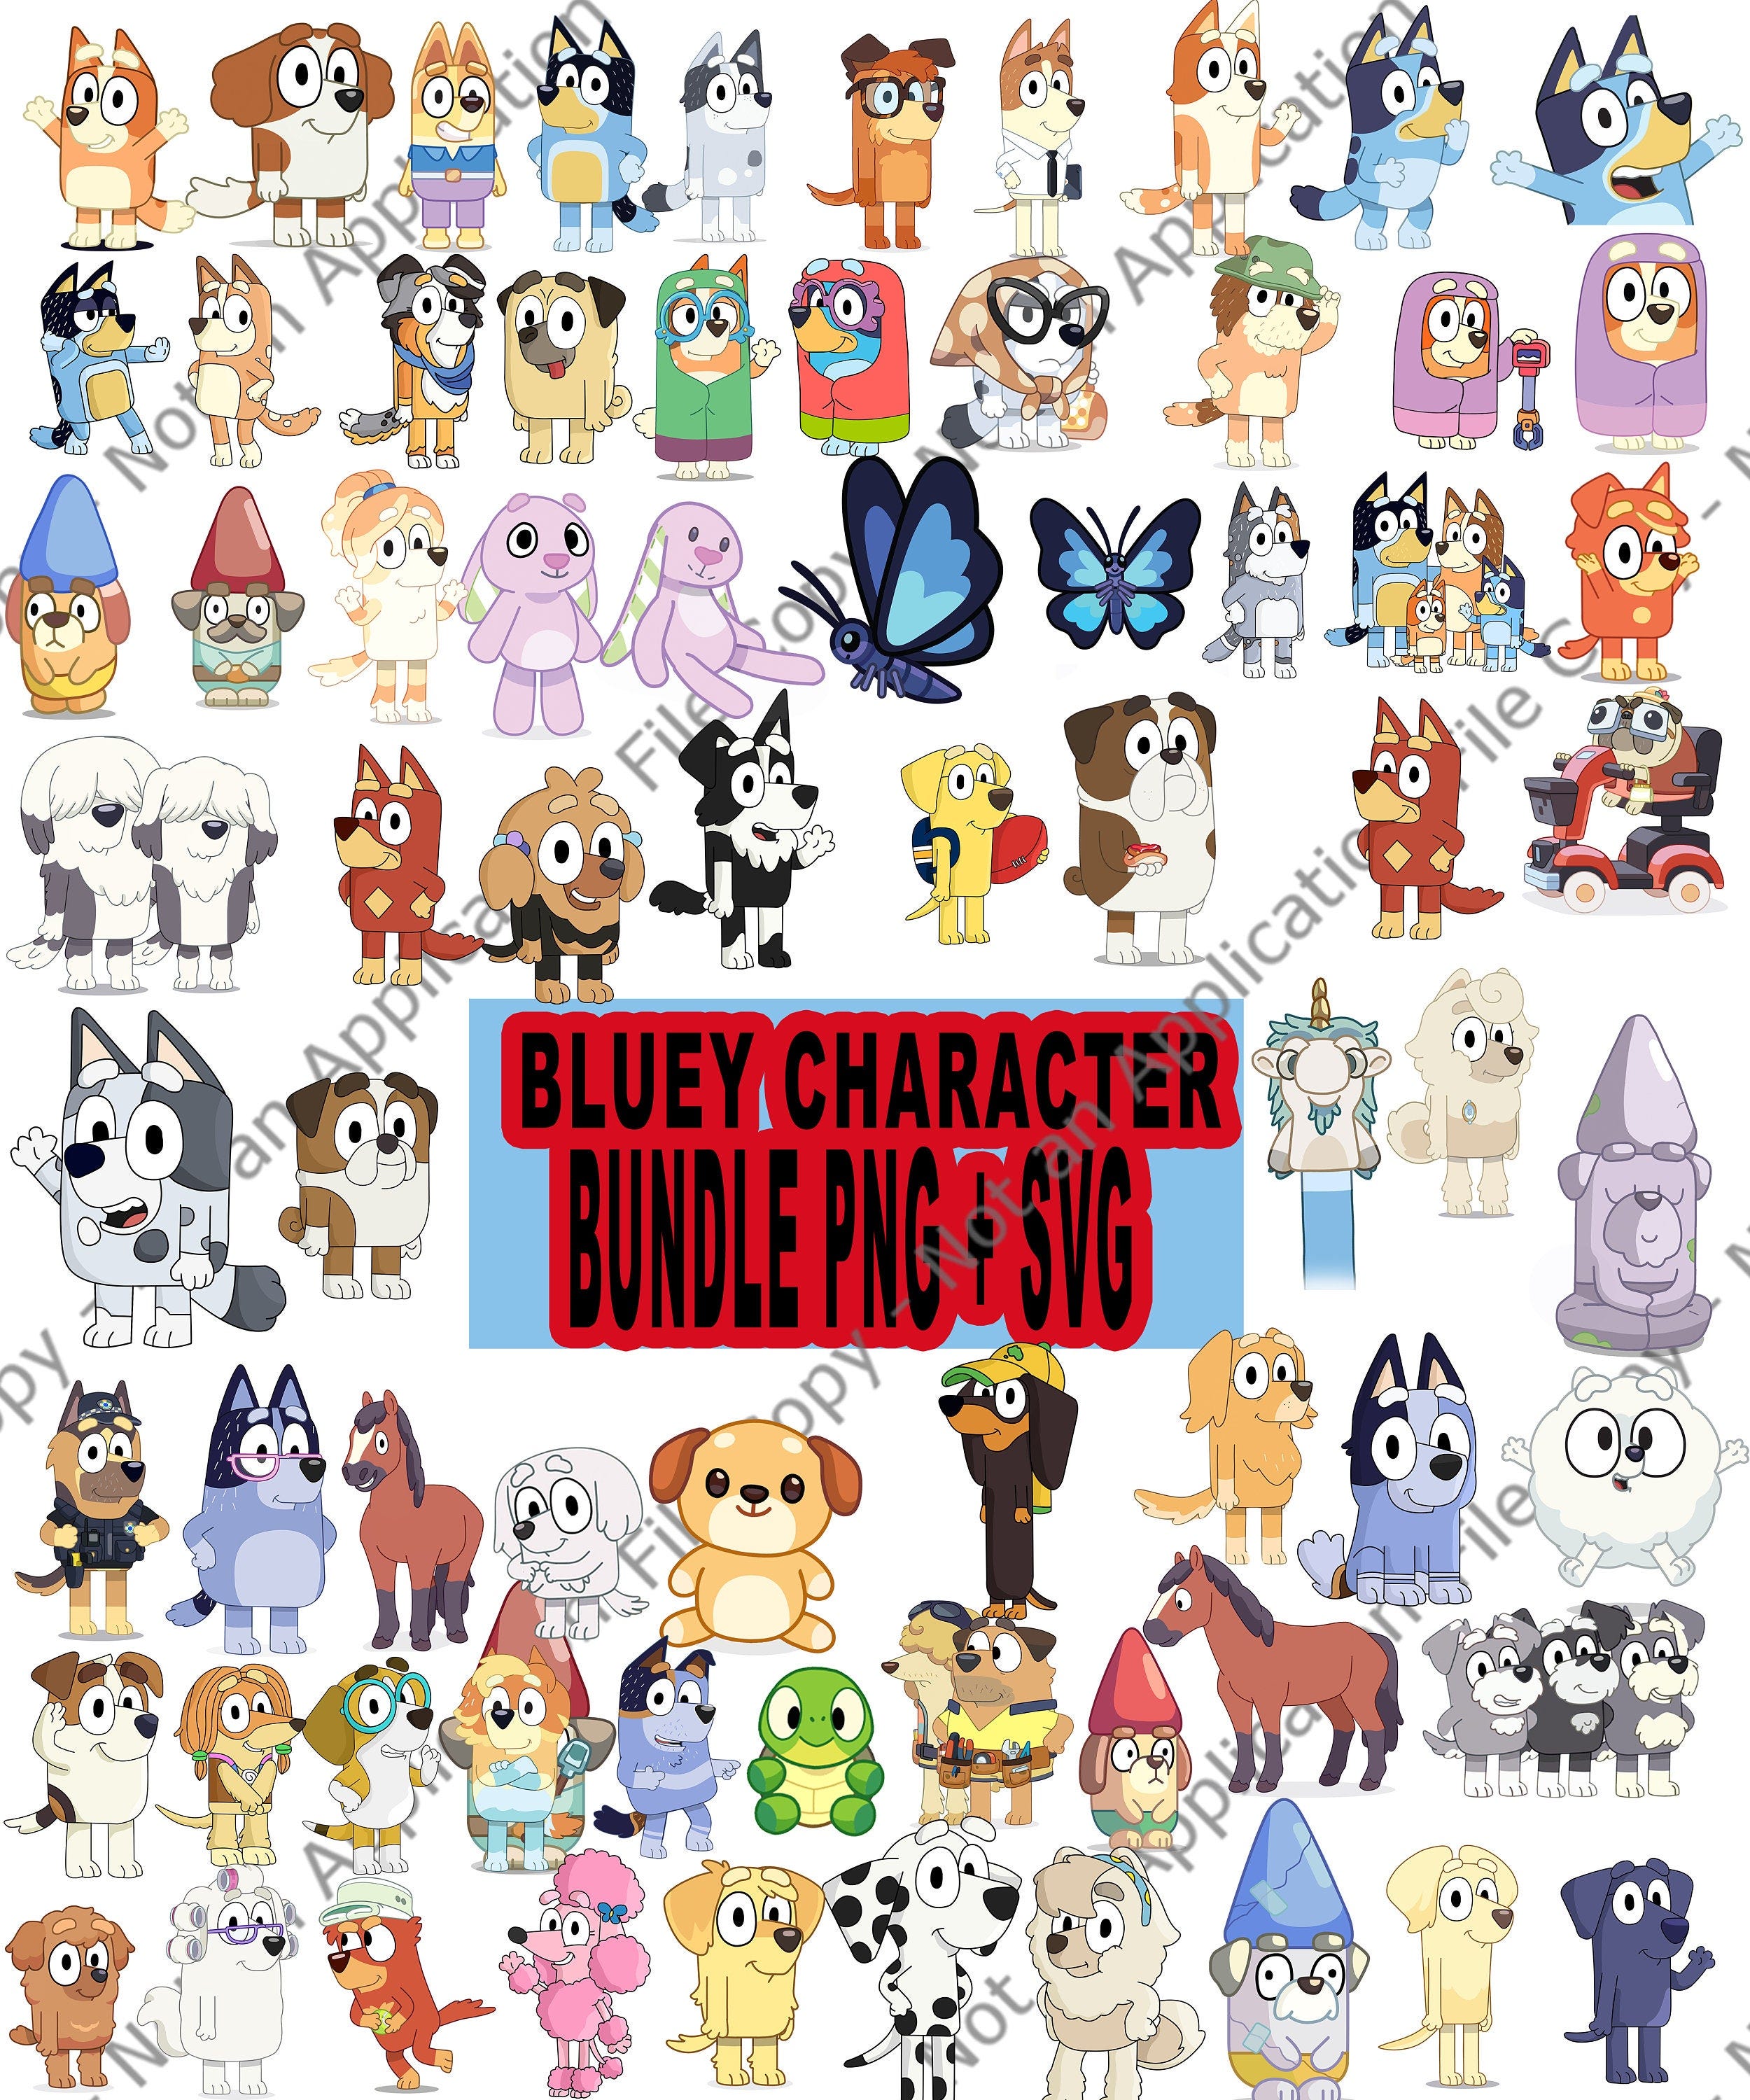 Bluey Bundle png svg, Bluey SVG, Bluey PNG, Bluey Bingo,Bluey Characters png, Bluey Shirt, Bluey Sweatshirt, Bluey Dad Shirt, Mega Bundle